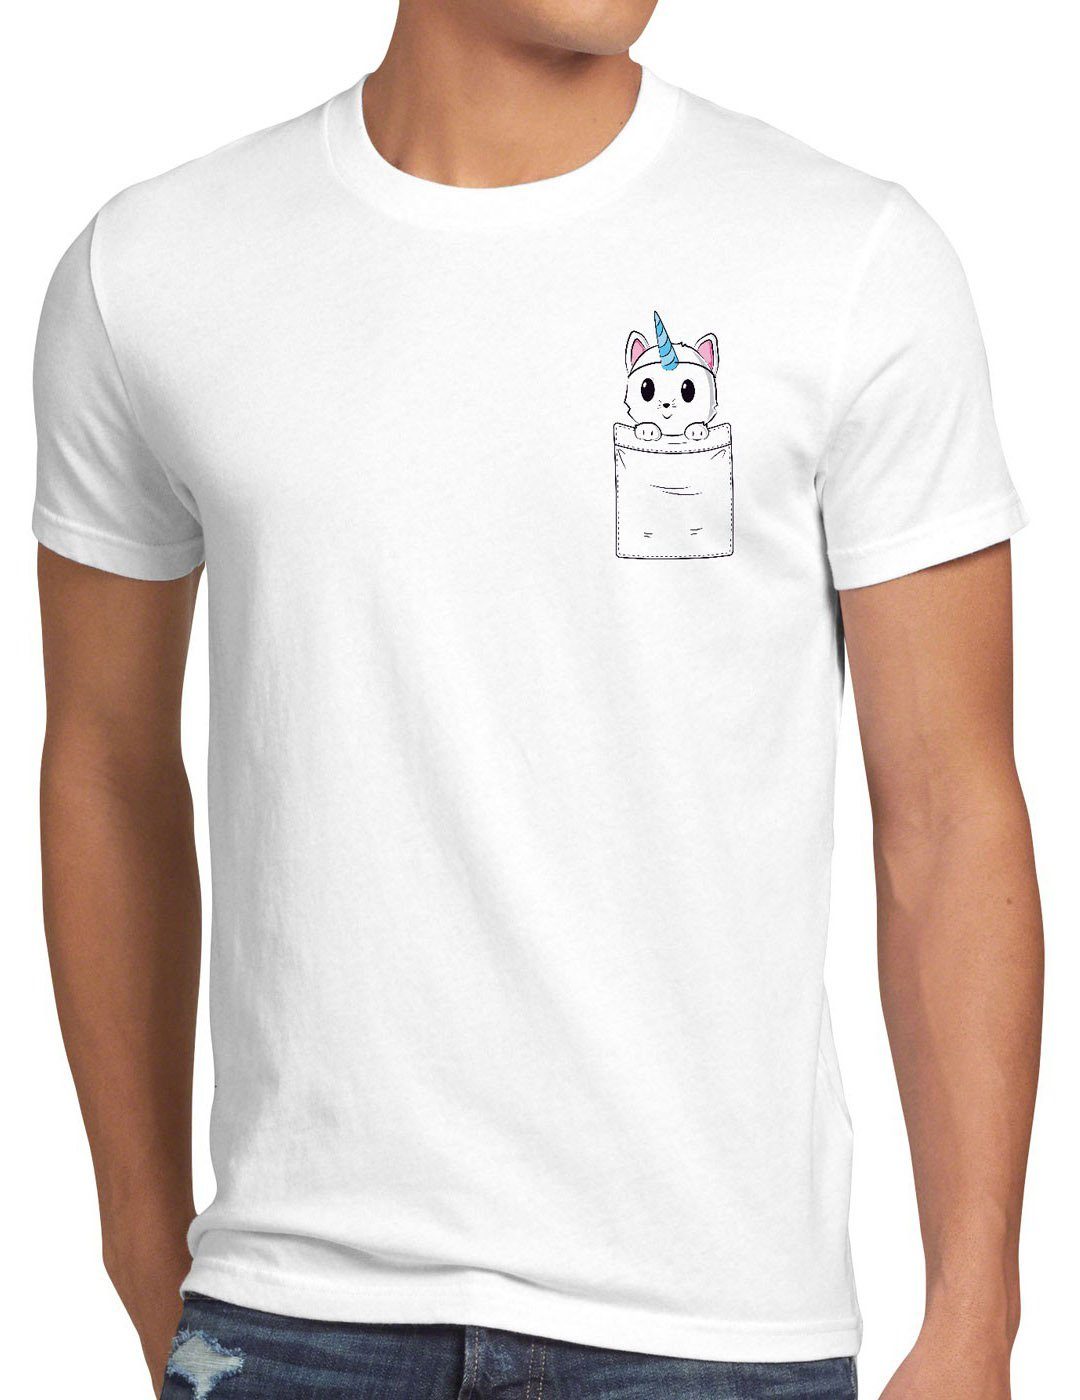 Katze T-Shirt style3 Cat weiß lustig Pocket Unicorn tasche Print-Shirt Herren Fun Brusttasche Einhorn